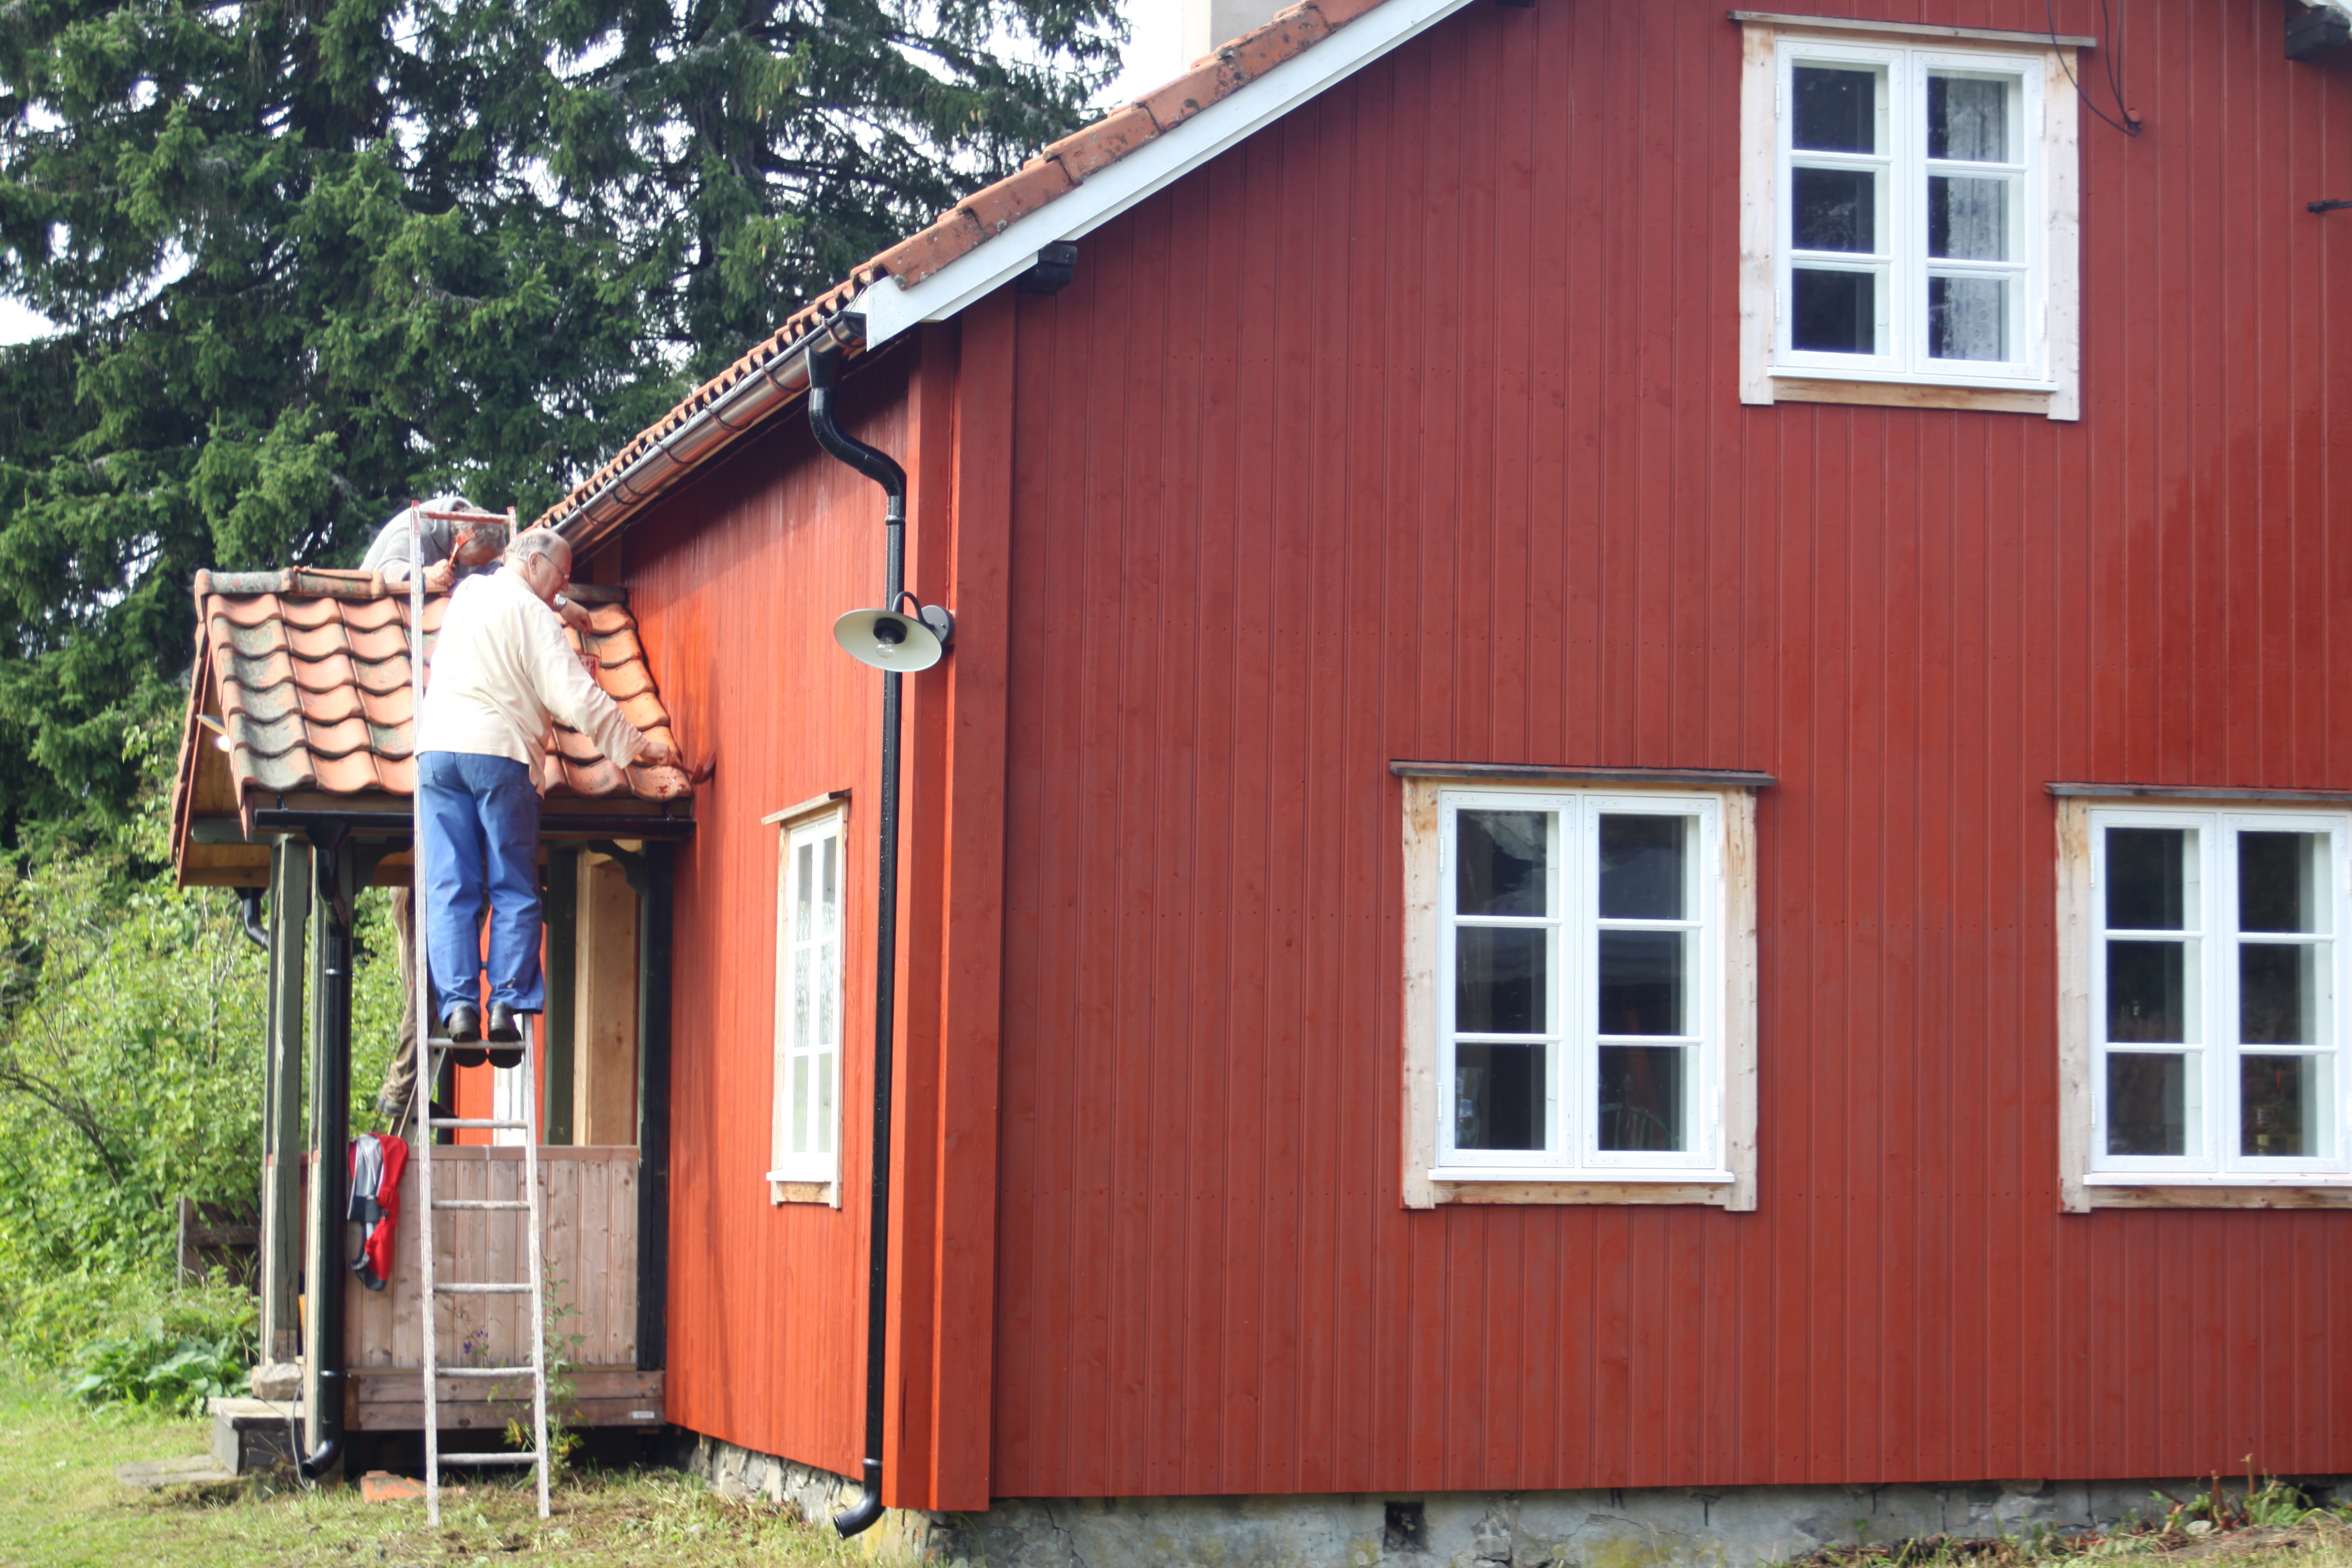 DOBBELT OPP: Nederste del av huset er utsatt for mer sol og regn en øverste. Det ble derfor malt et ekstra strøk på den nederste etasjen. Foto: Christel E Wigen Grøndahl, Byggogbevar.no.